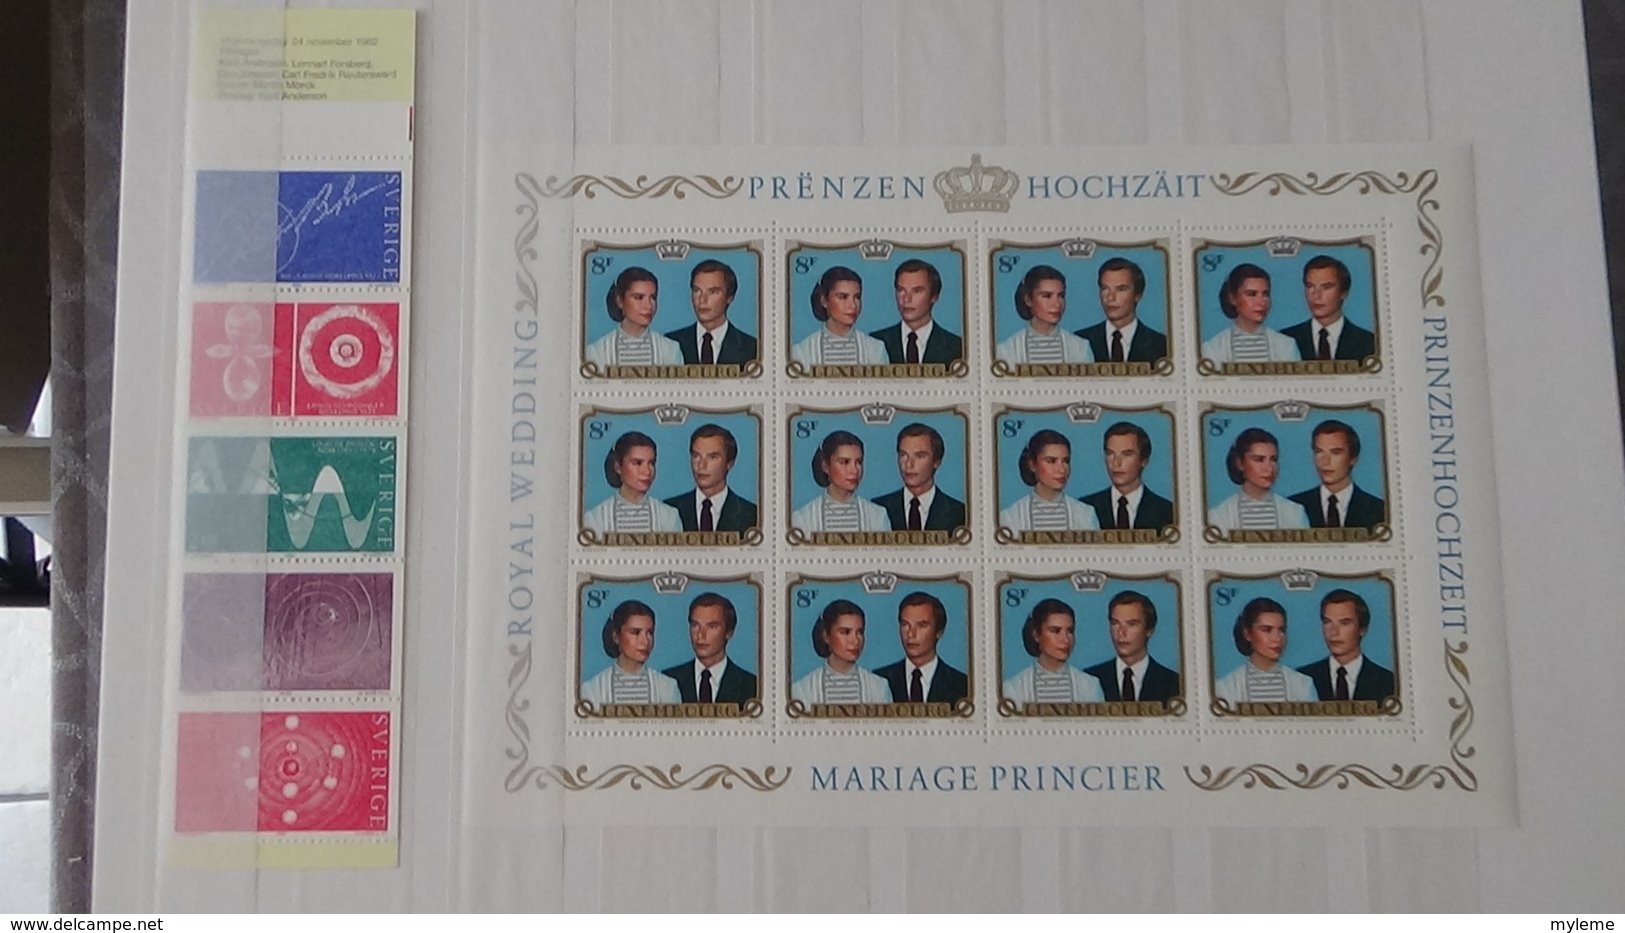 Plus de 140 blocs, bandes, carnets ** + timbres de différents pays. A saisir !!!